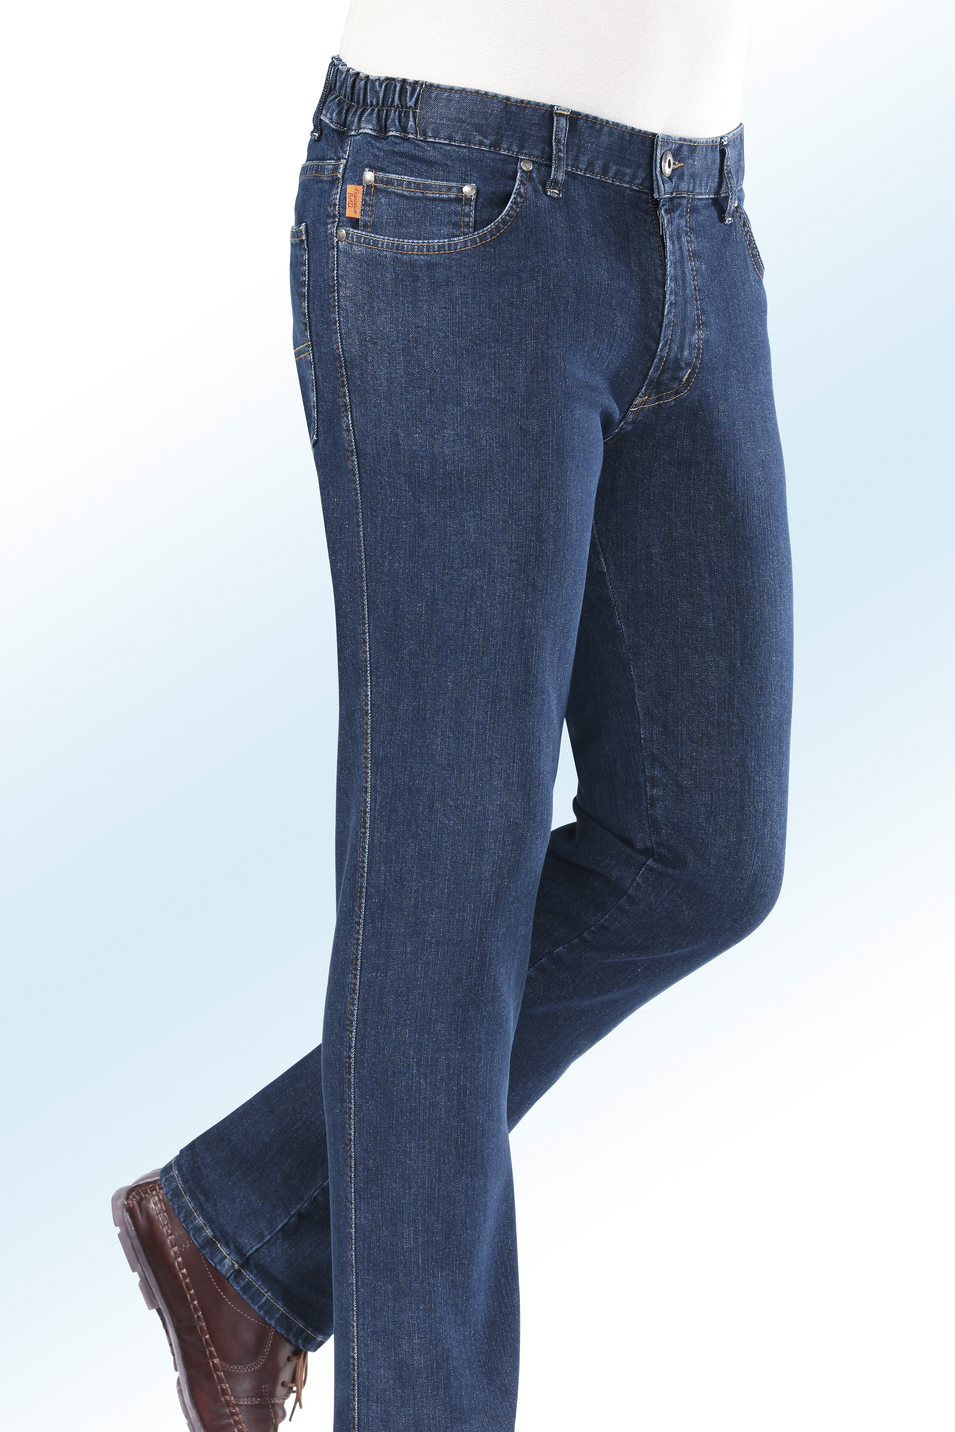 "Francesco Botti"-Jeans mit Dehnbundeinsätzen in 3 Farben, Jeansblau, Größe 25 von FRANCESCO BOTTI